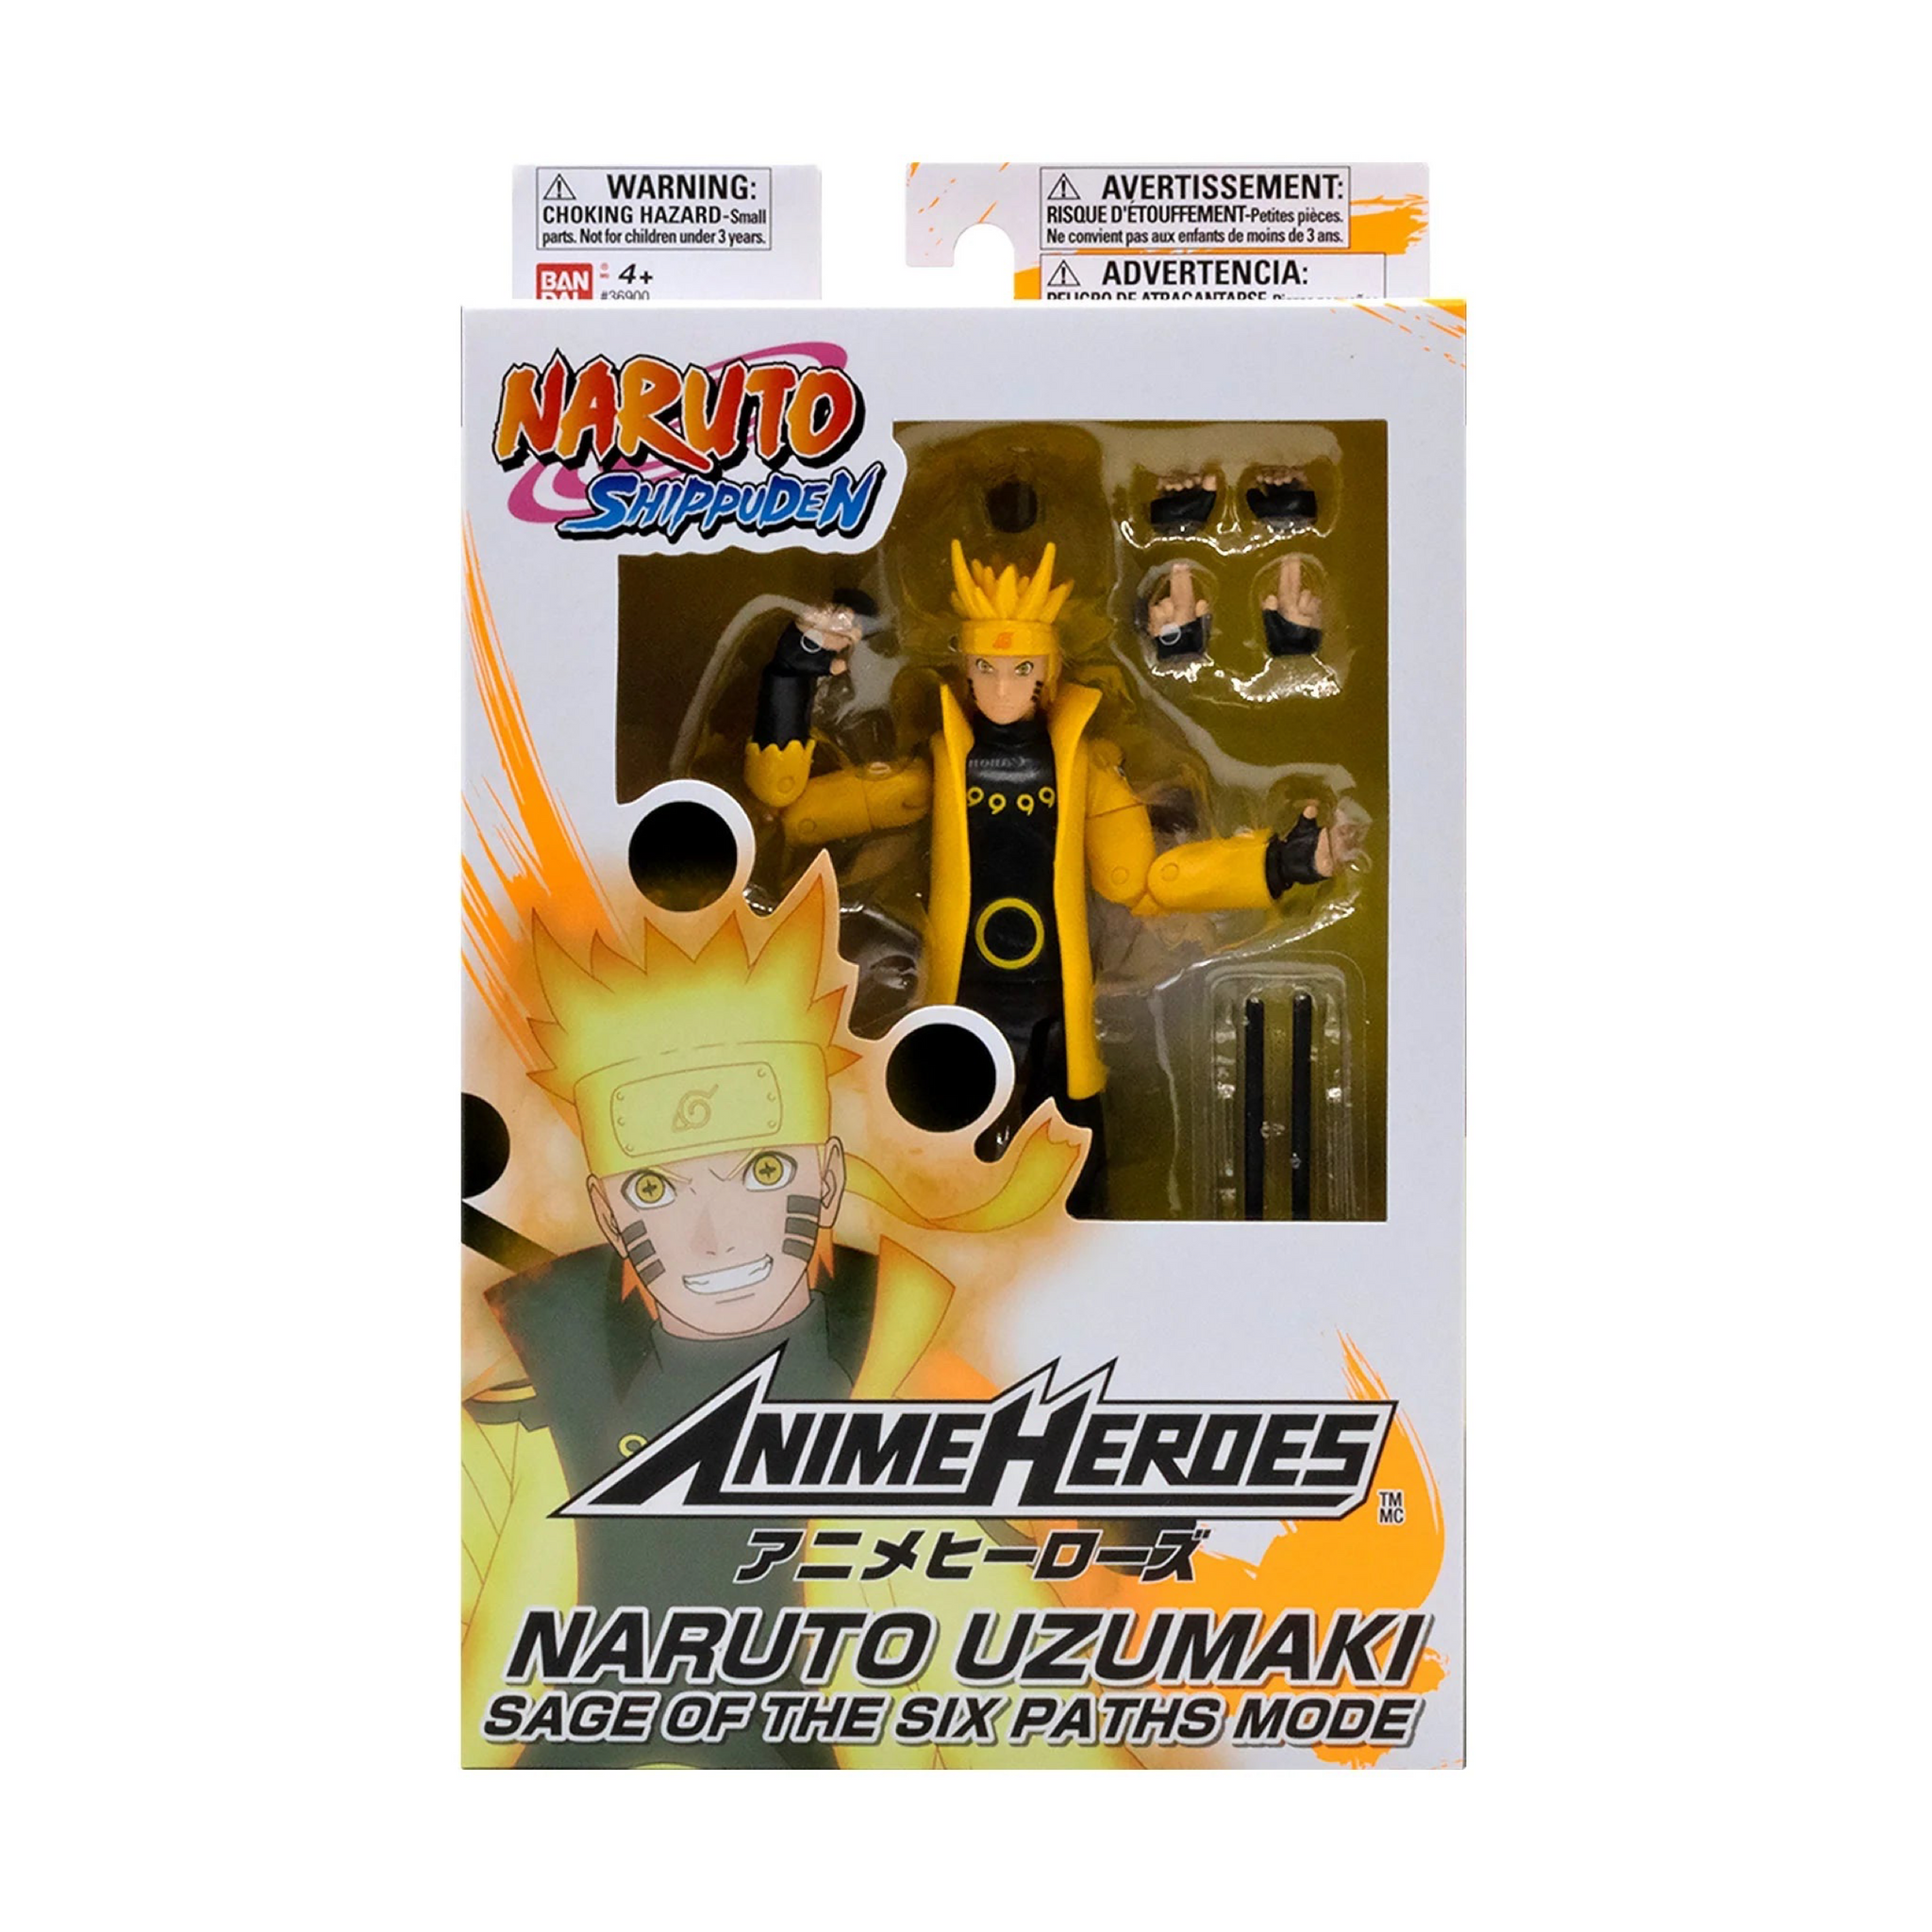  ANIME HEROES - Naruto - Naruto Uzumaki Sage Mode